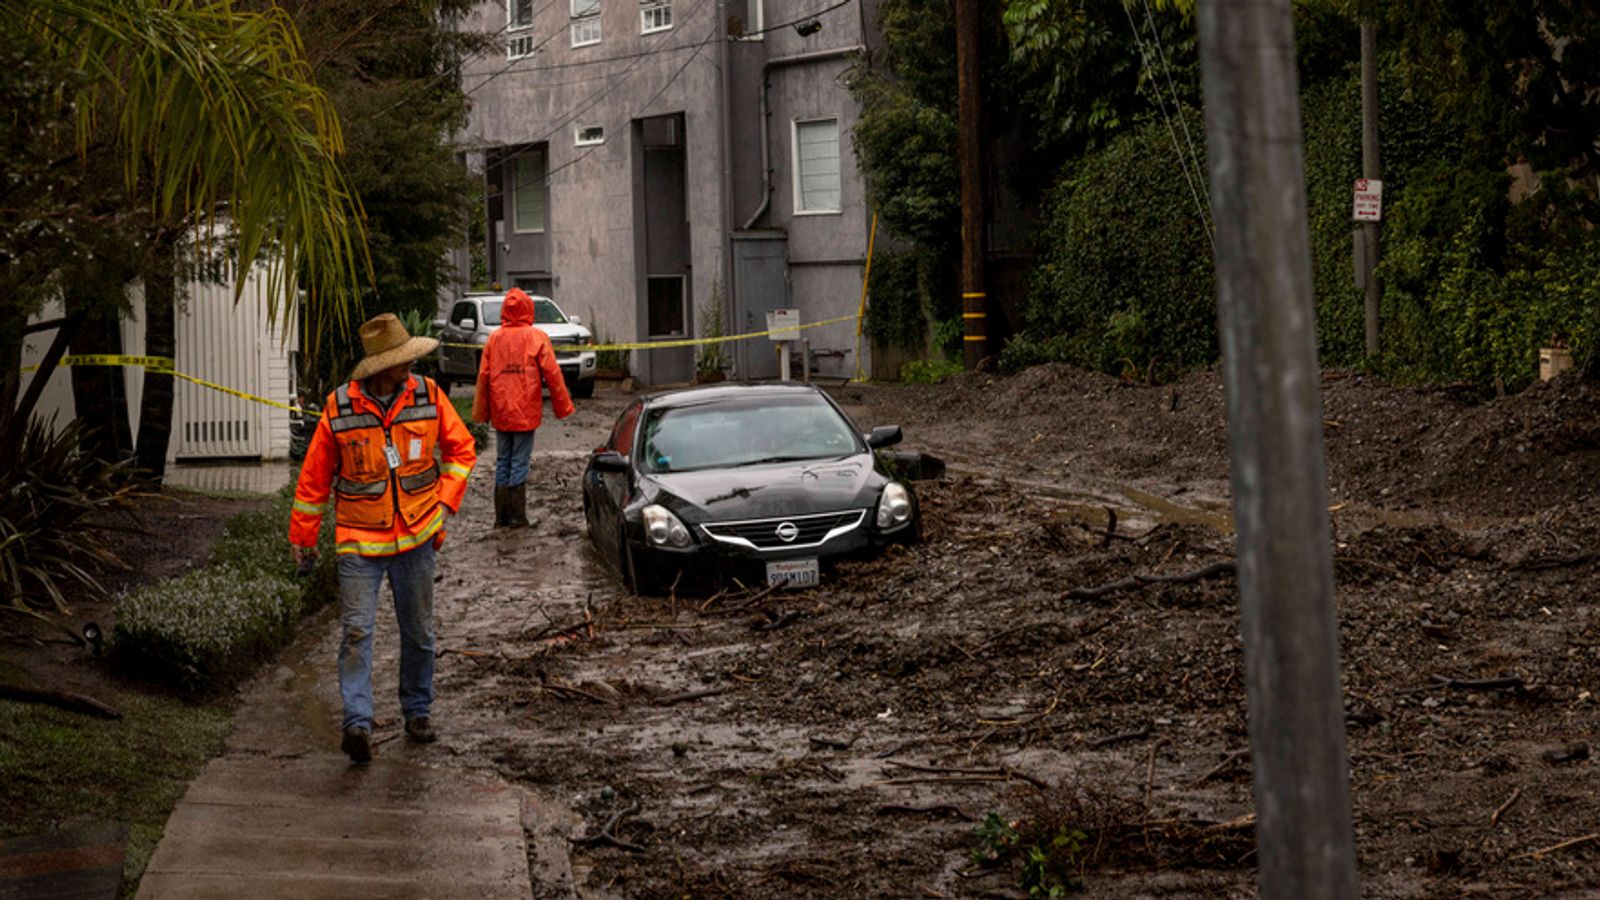 Времето в Калифорния: Лос Анджелис, засегнат от 475 кални свлачища, тъй като атмосферната речна буря носи повече дъжд